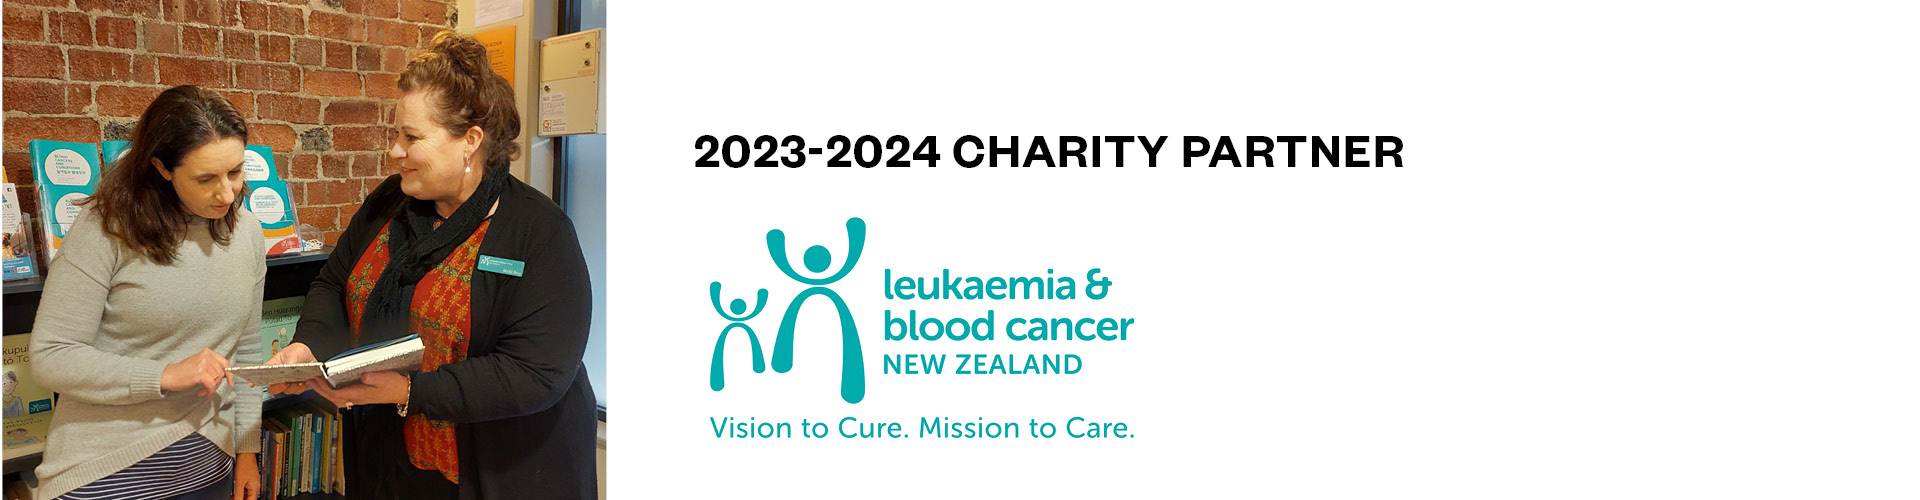 Leukaemia & blood cancer - Website Banner 1920x500